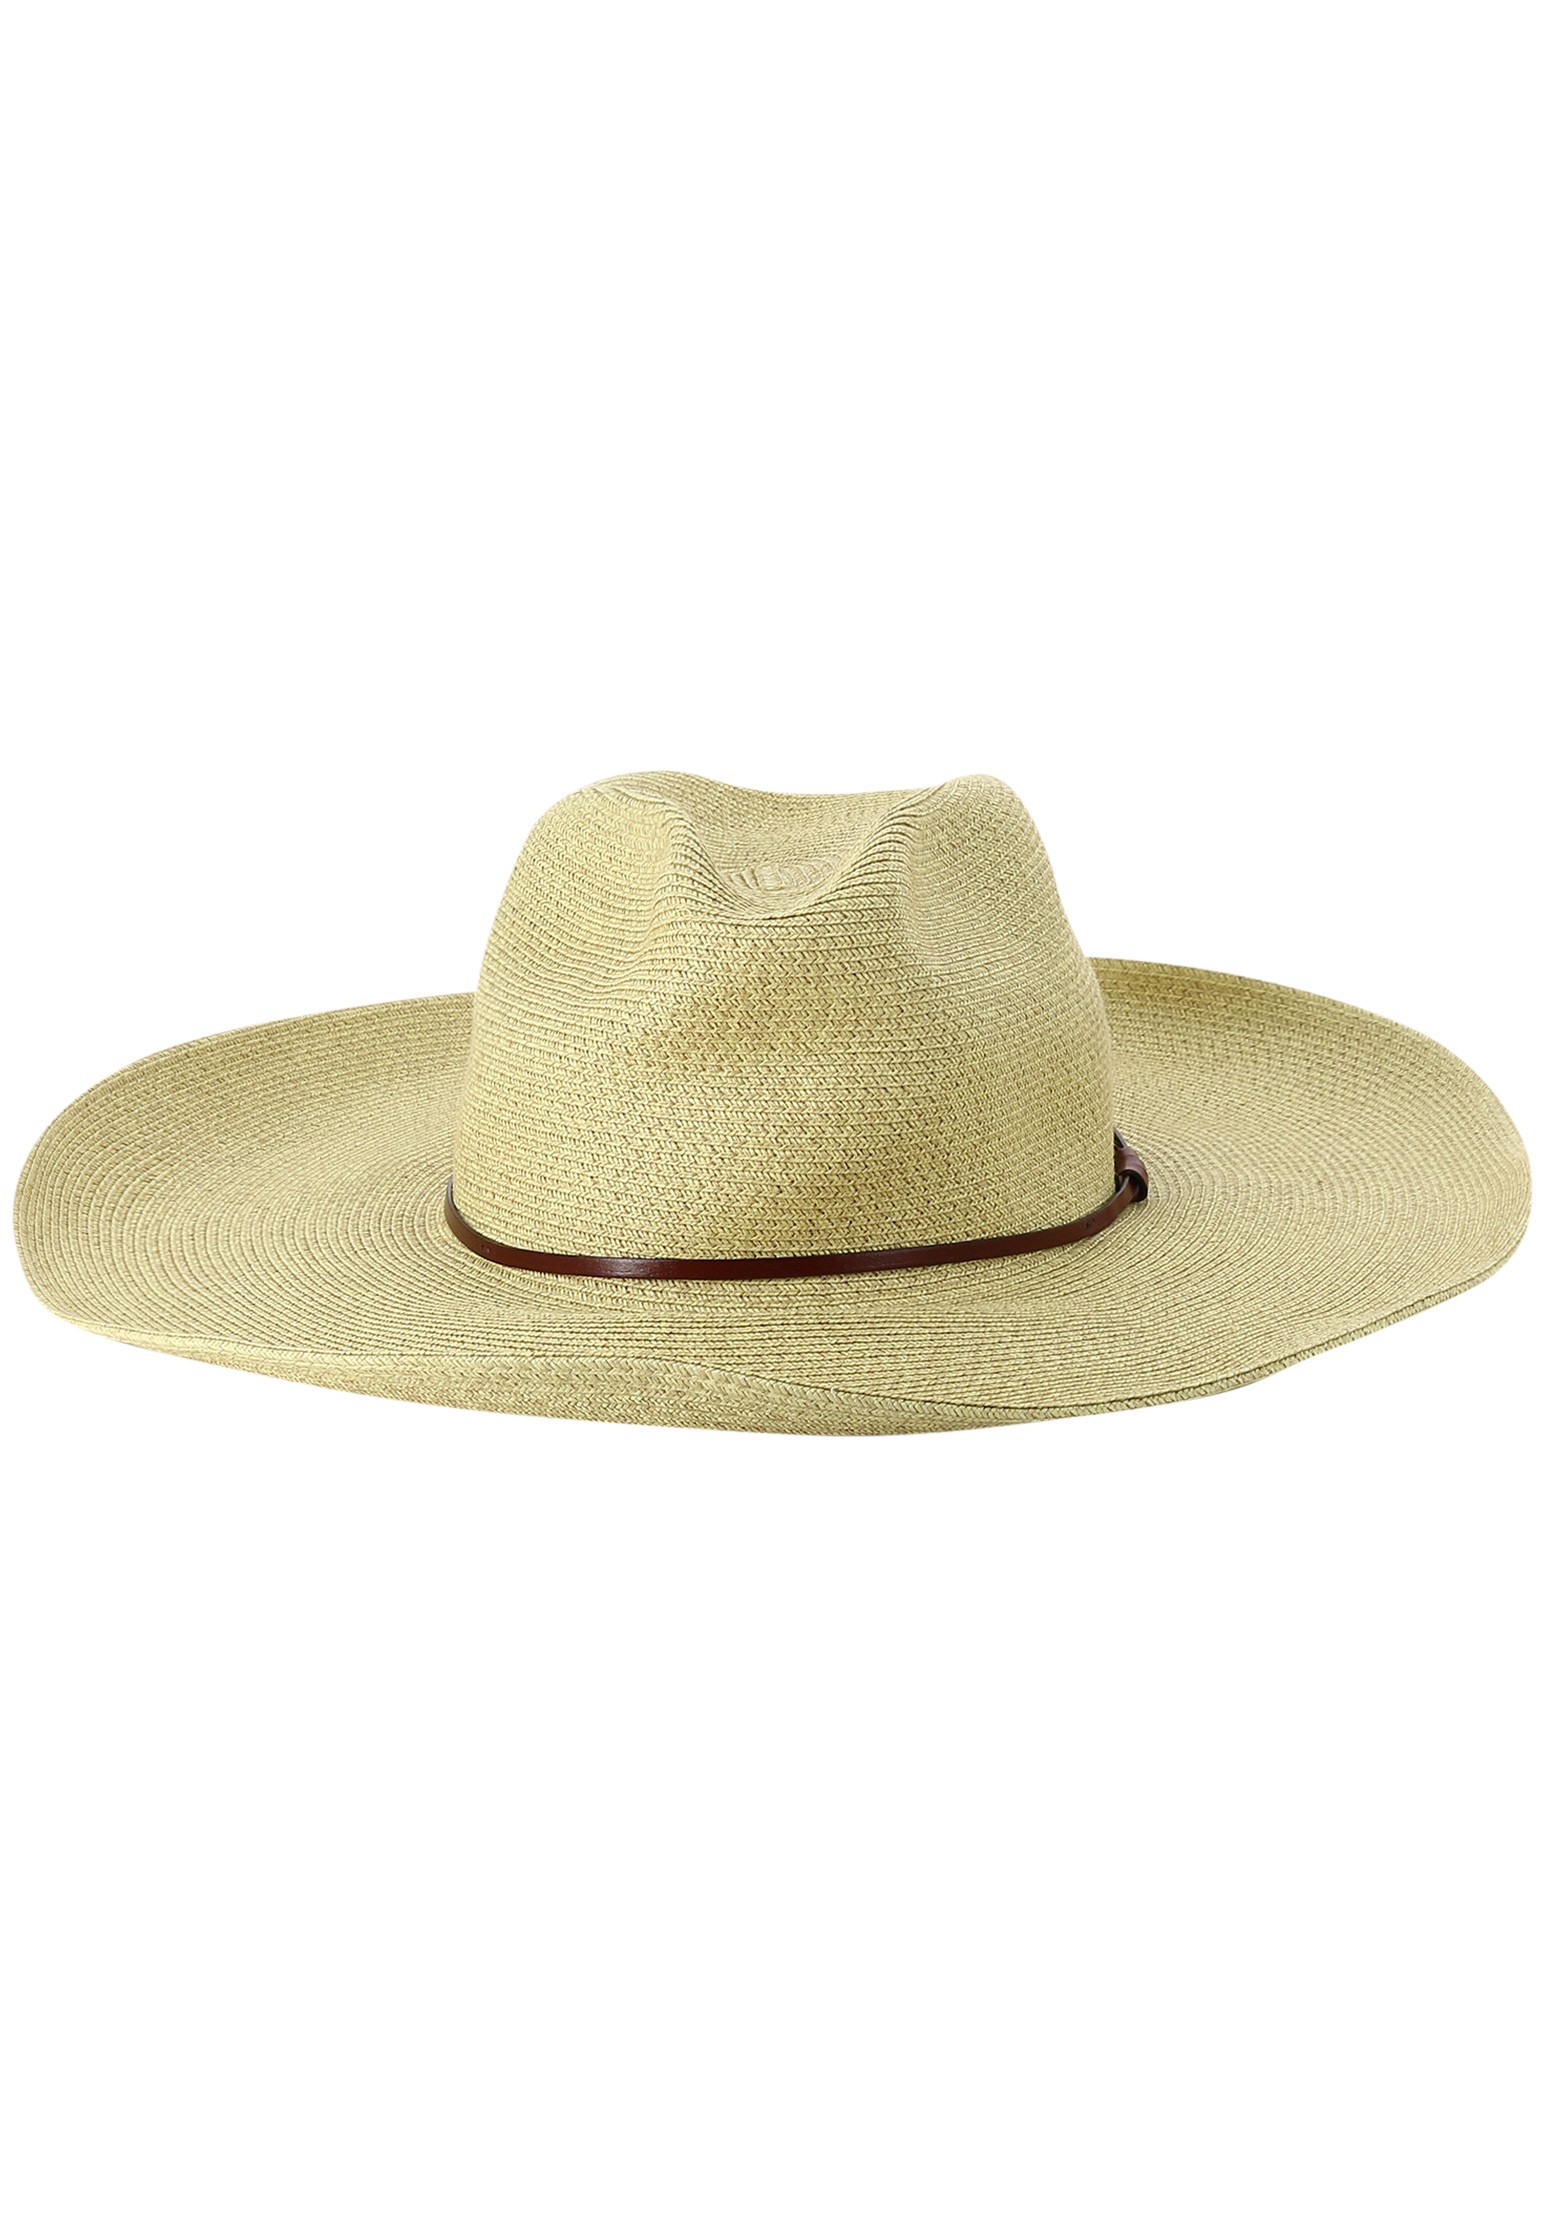 Hat p. Шляпа p.a.r.o.s.h. бежевый. Бежевая шляпа. 31503 RGP шляпа. Hat-p-16 b.